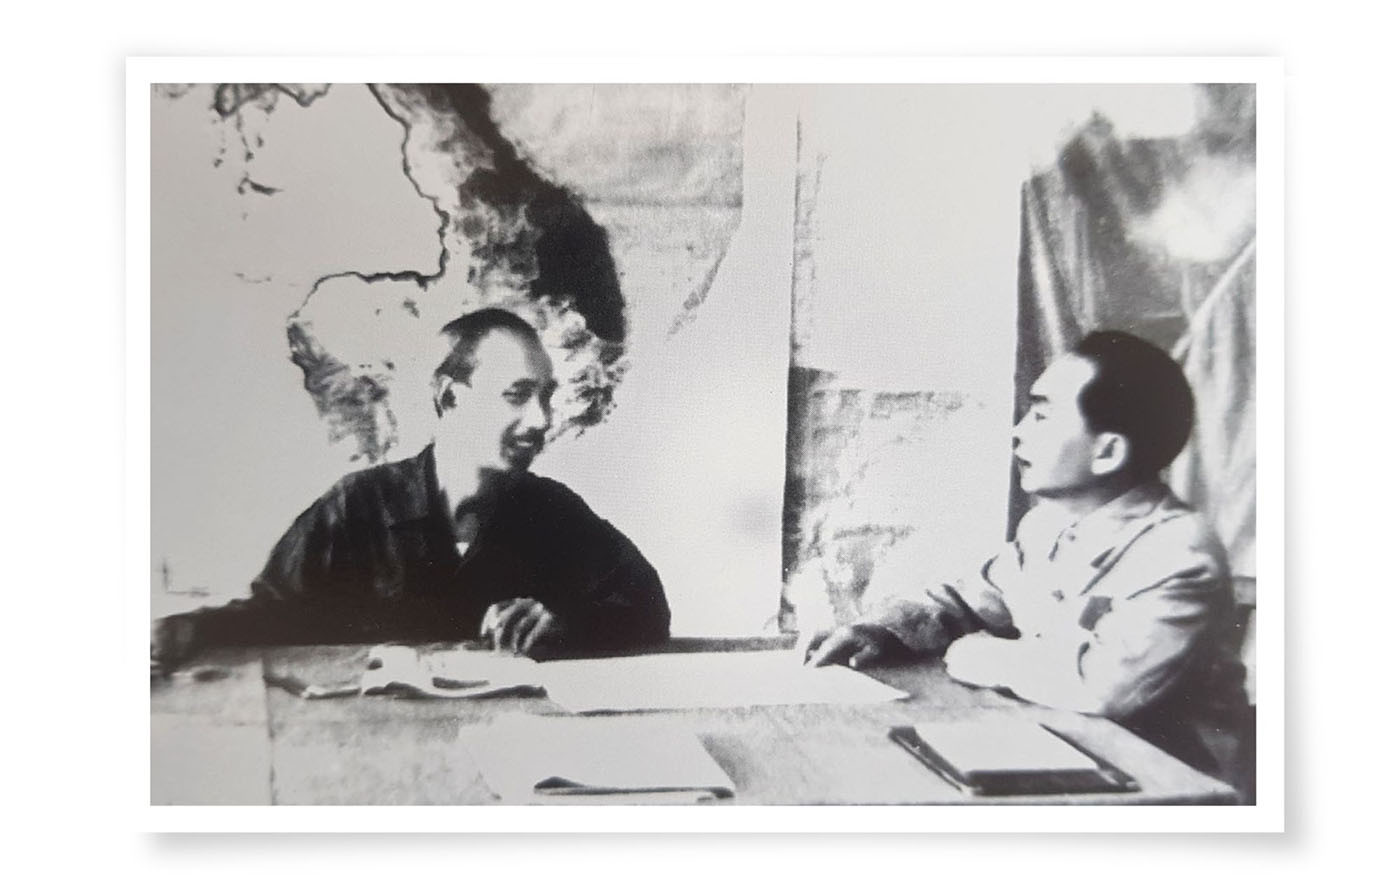 Chủ tịch Hồ Chí Minh trực tiếp giao nhiệm vụ cho Đại tướng Võ Nguyên Giáp và căn dặn: “Trận này hết sức quan trọng, đánh là phải thắng, nếu không chắc thắng, không đánh”.
